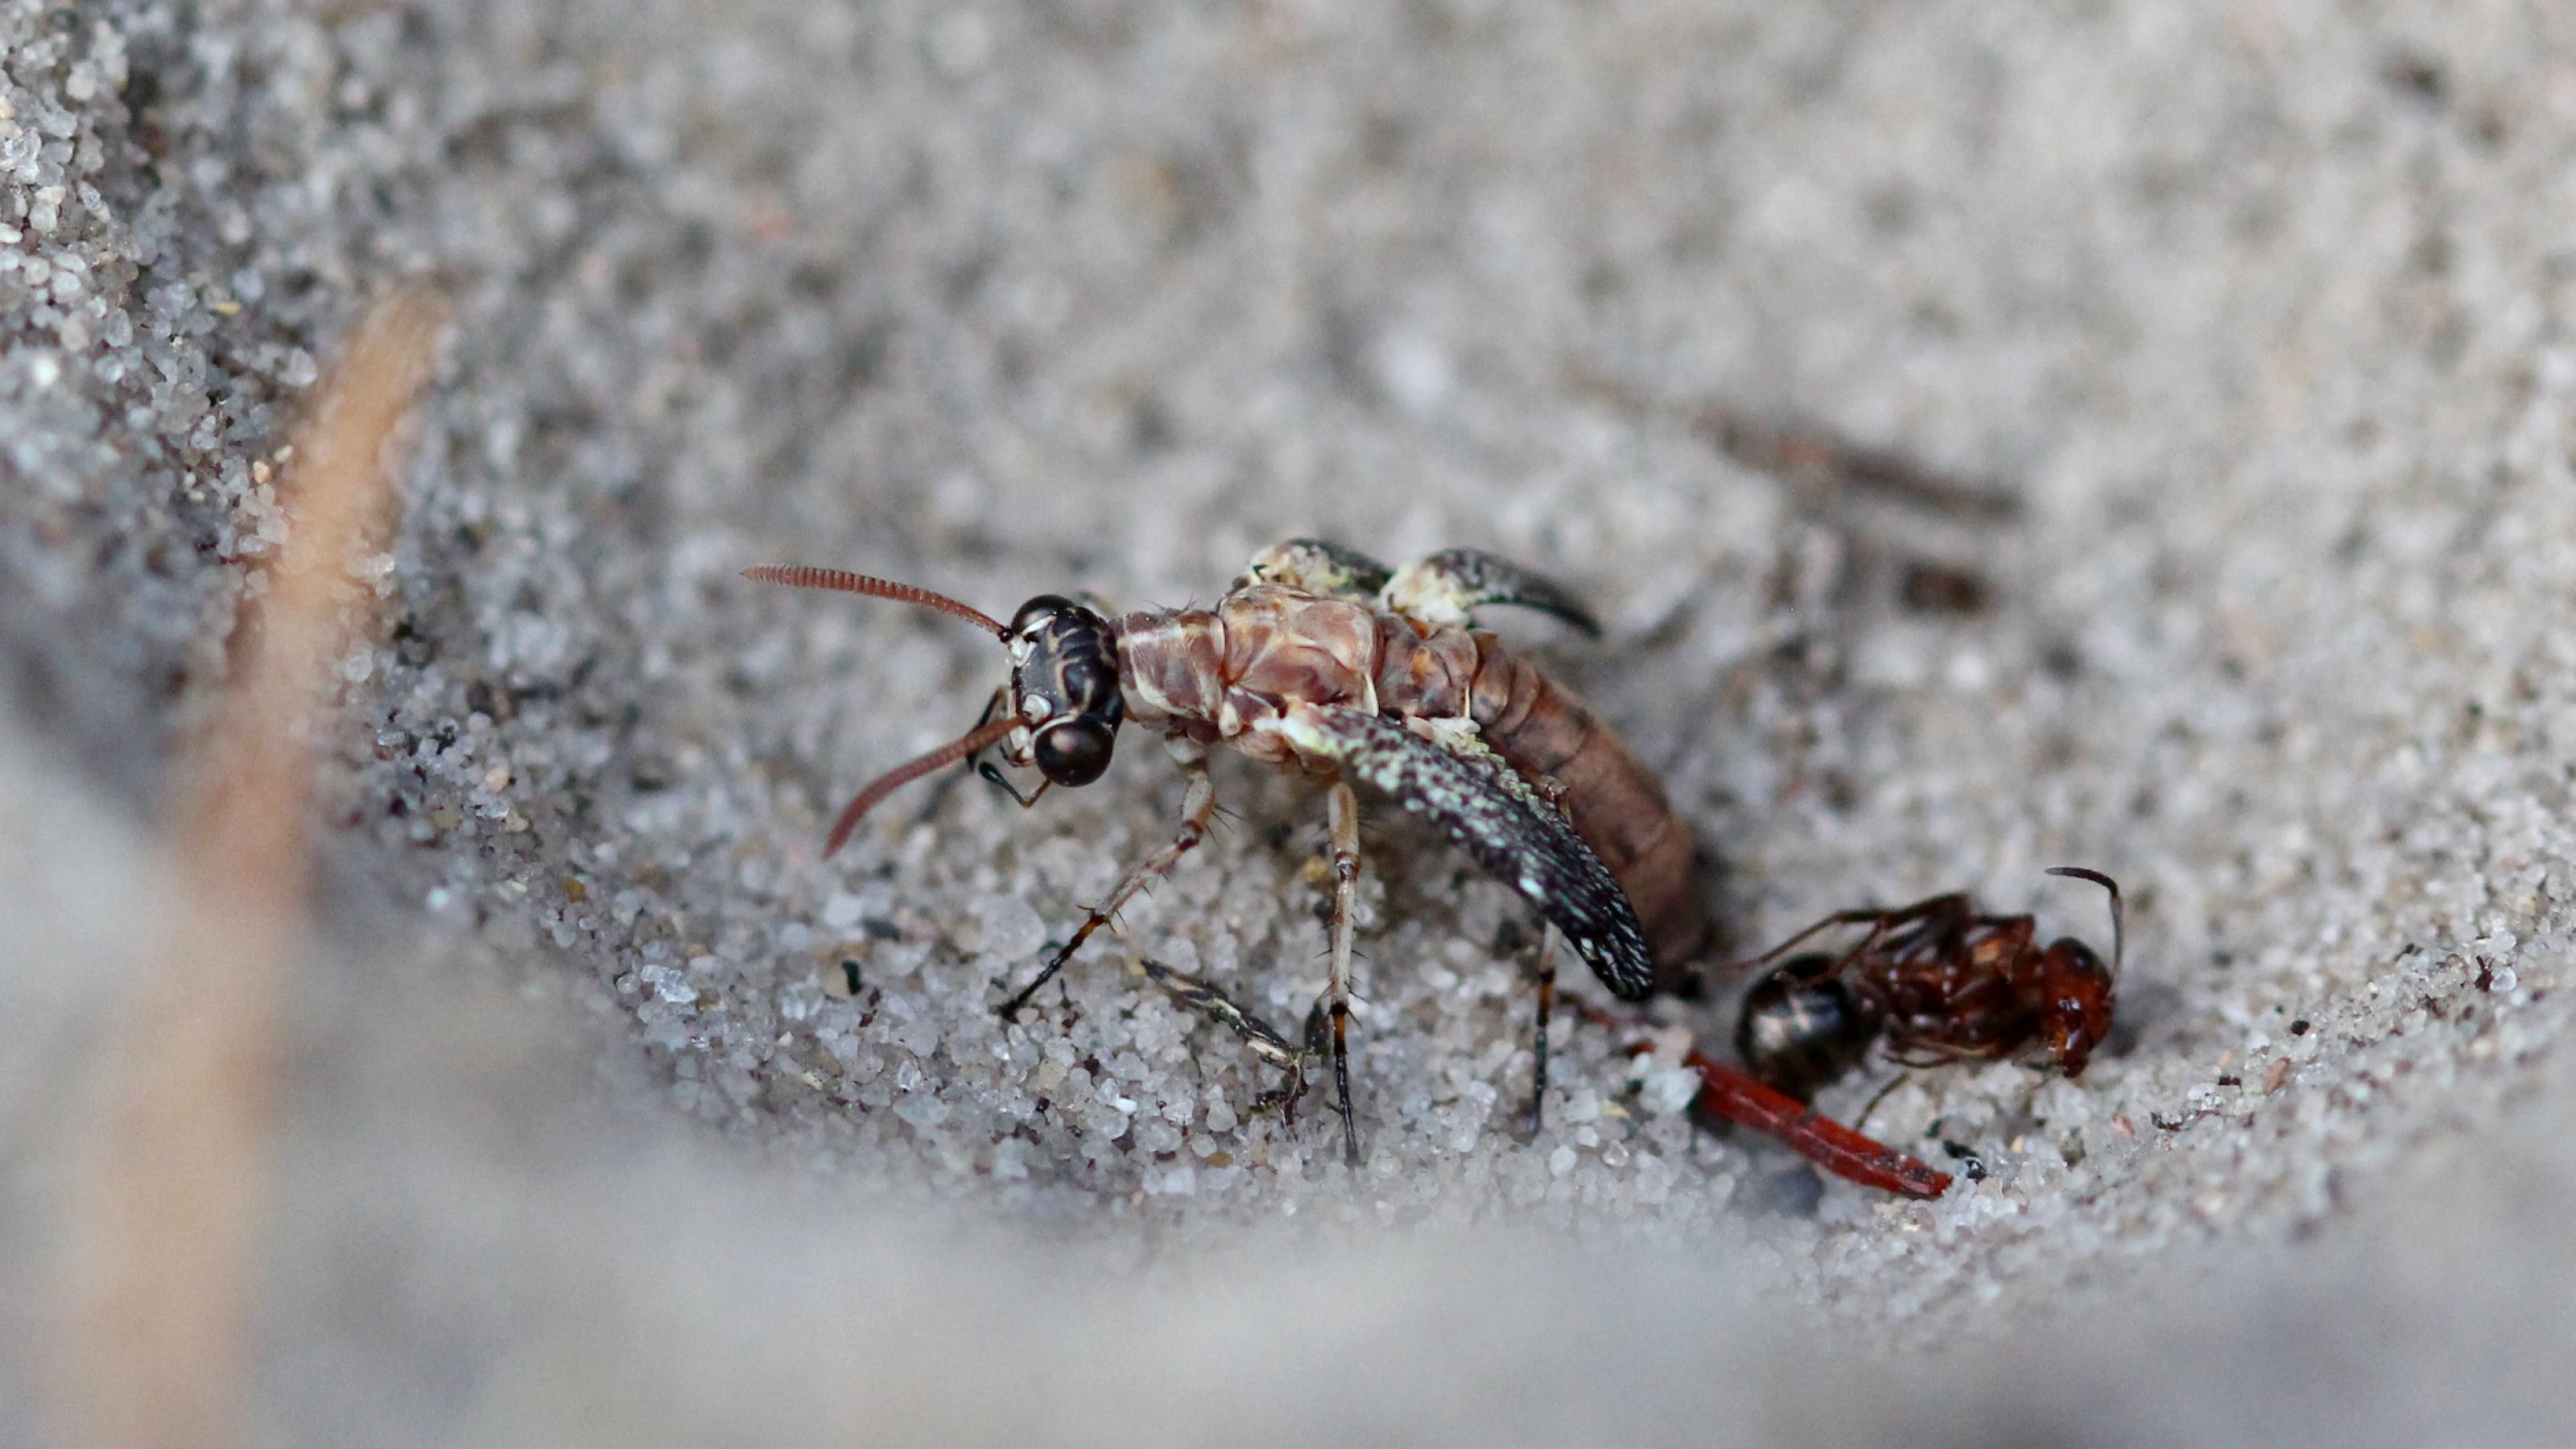 Der Hinterleib eines braun-beige gezeichneten Insekts steckt noch im Sand, Vorteil mitsamt Kopf schaut bereits heraus. Neben der schlüpfenden Ameisenjungfer liegt eine tote Ameise.